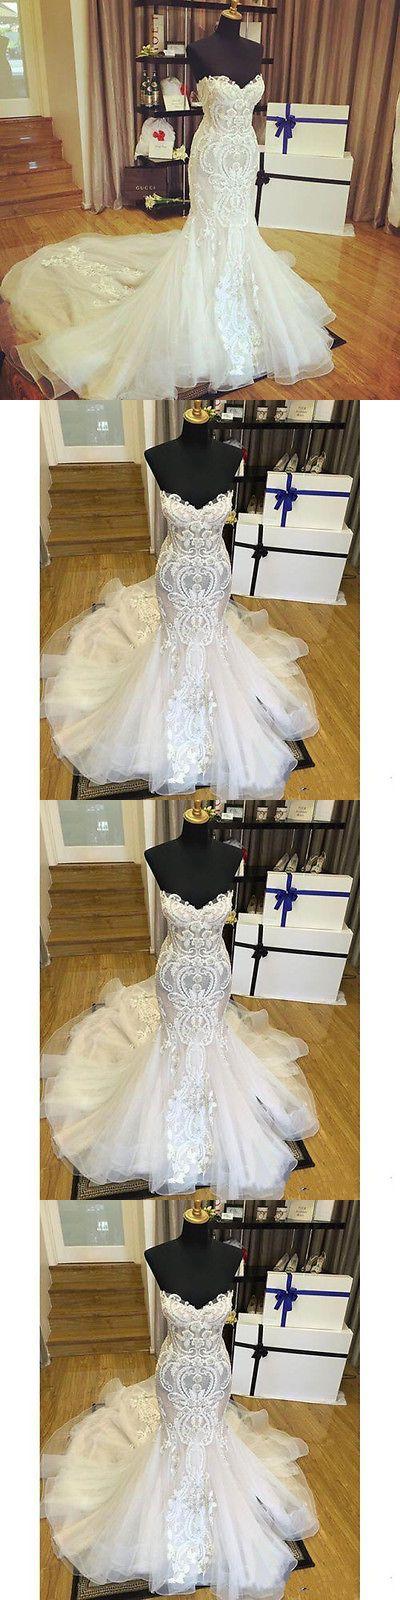 Wedding - Wedding Fashion